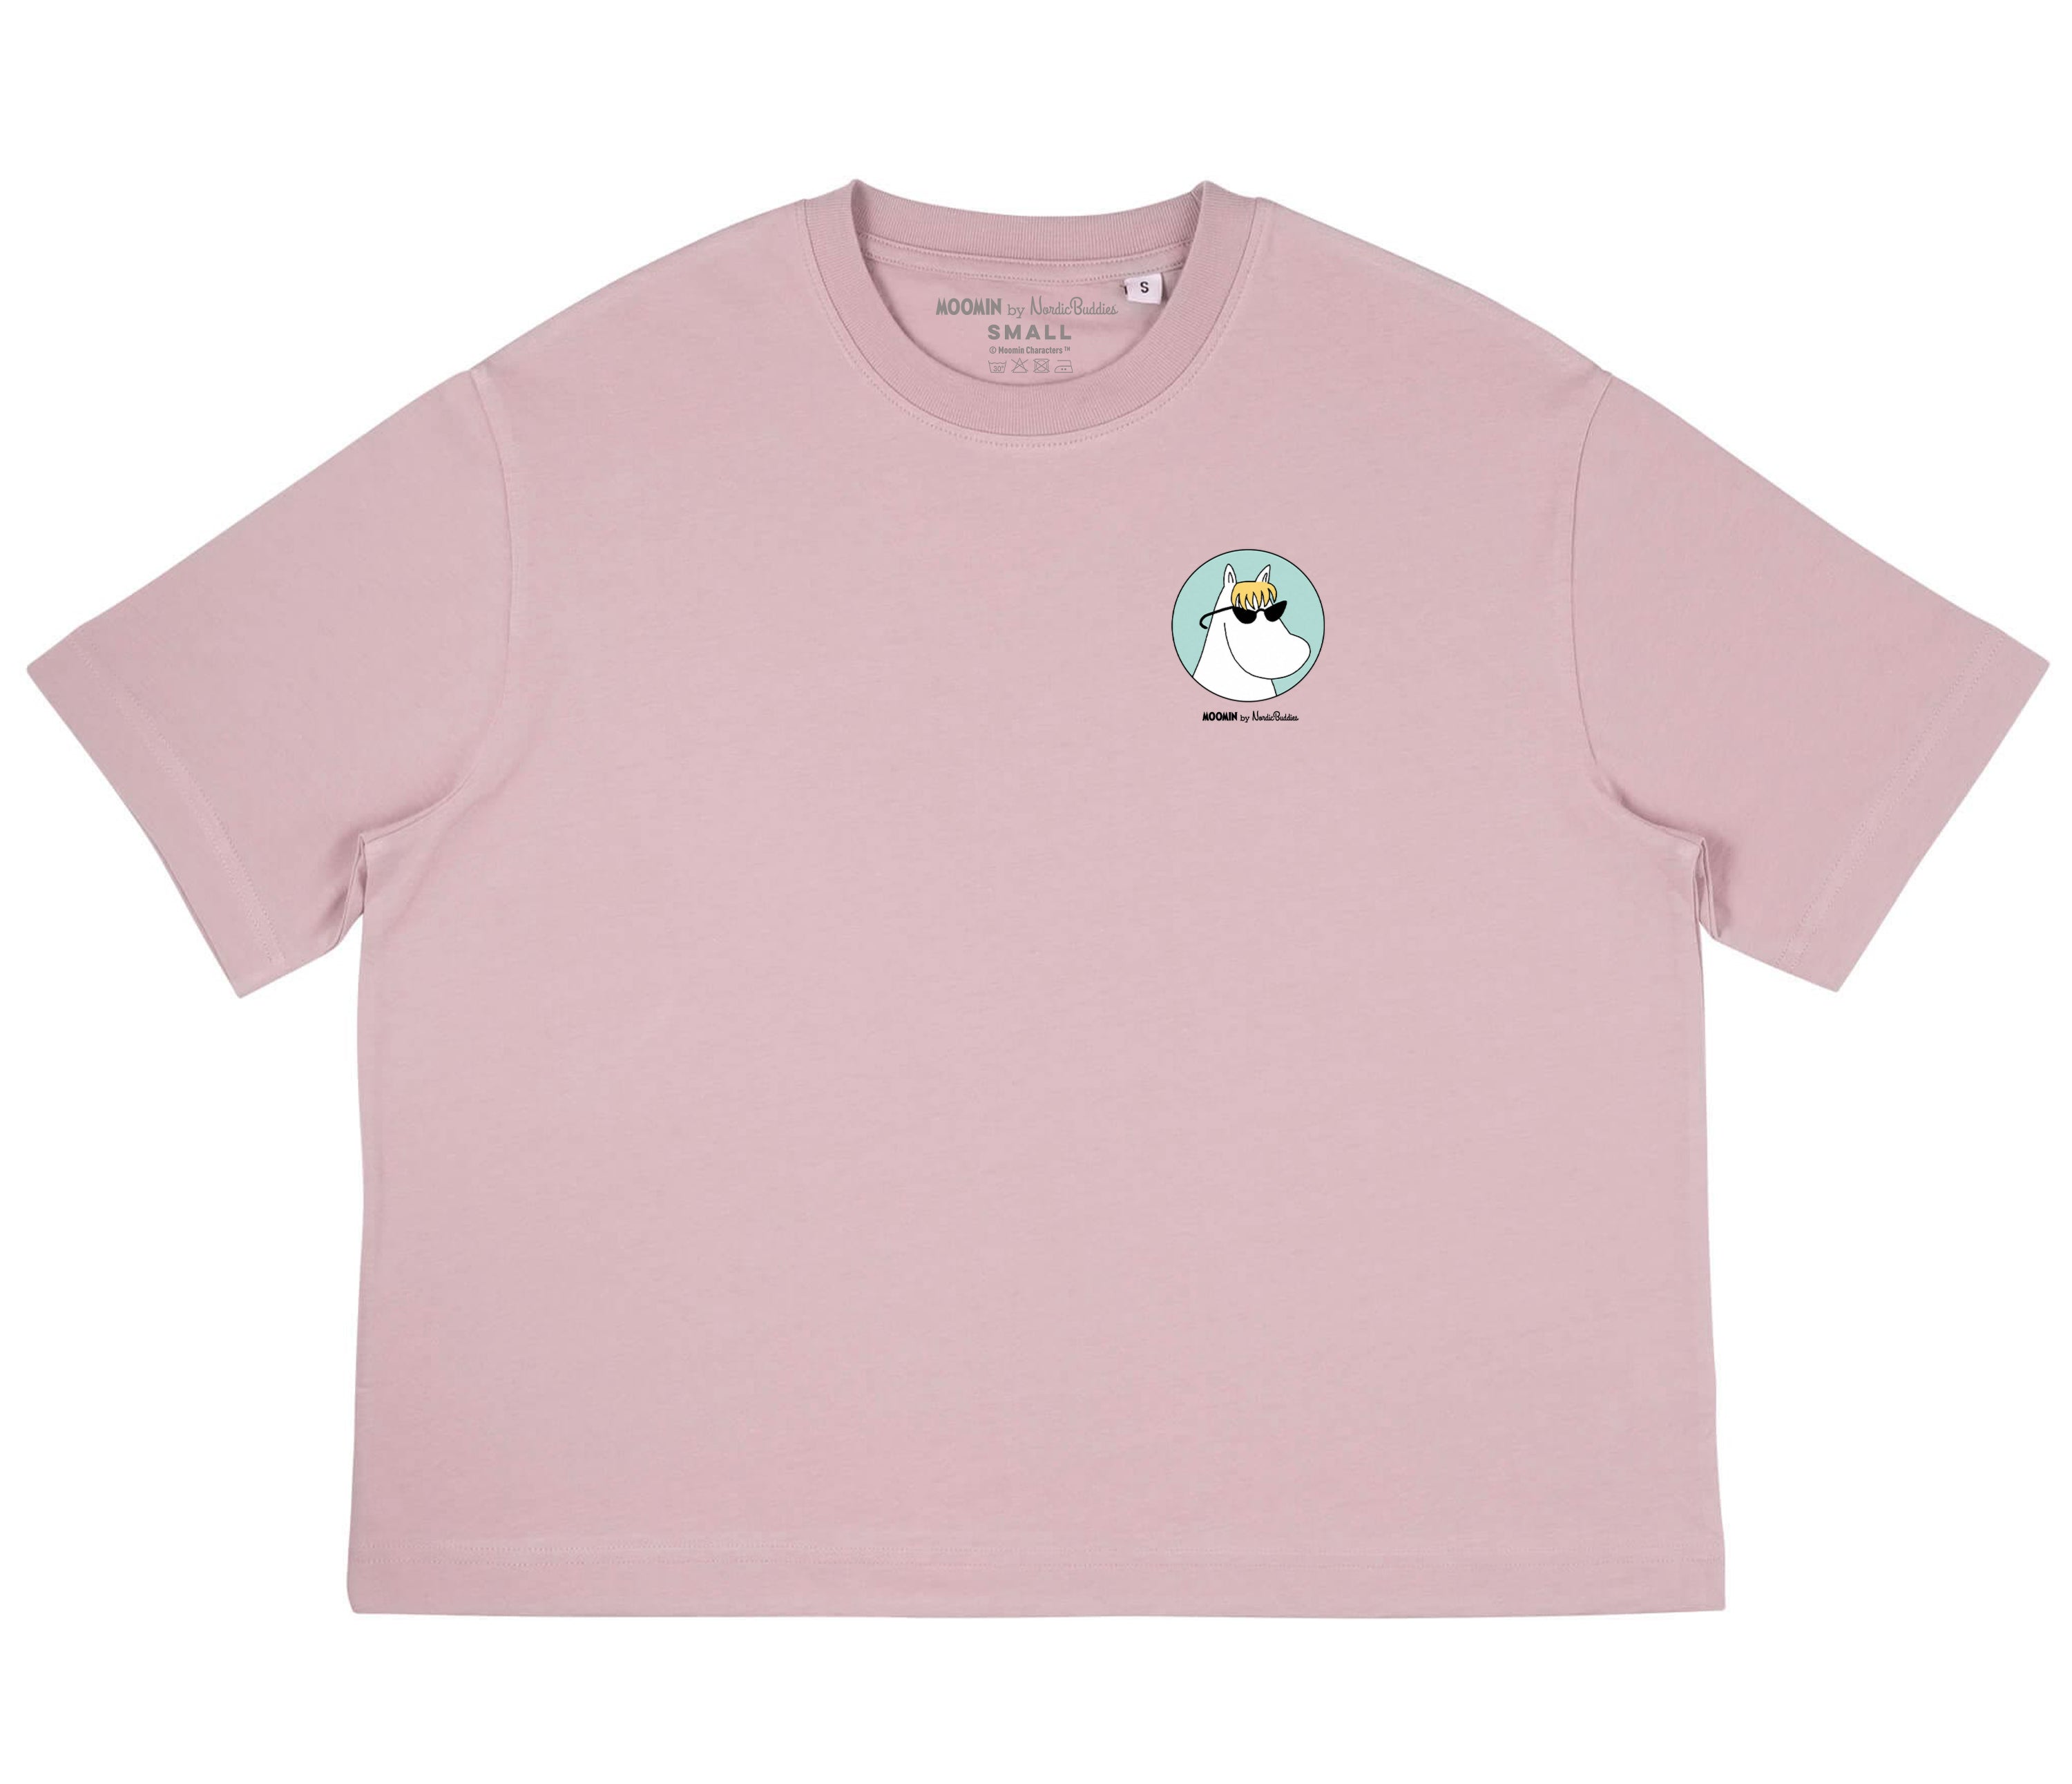 Moomin Ladies T-Shirt Pink Snorkmaiden | Muumi Naisten T-Paita Vaaleanpunainen Niiskuneiti